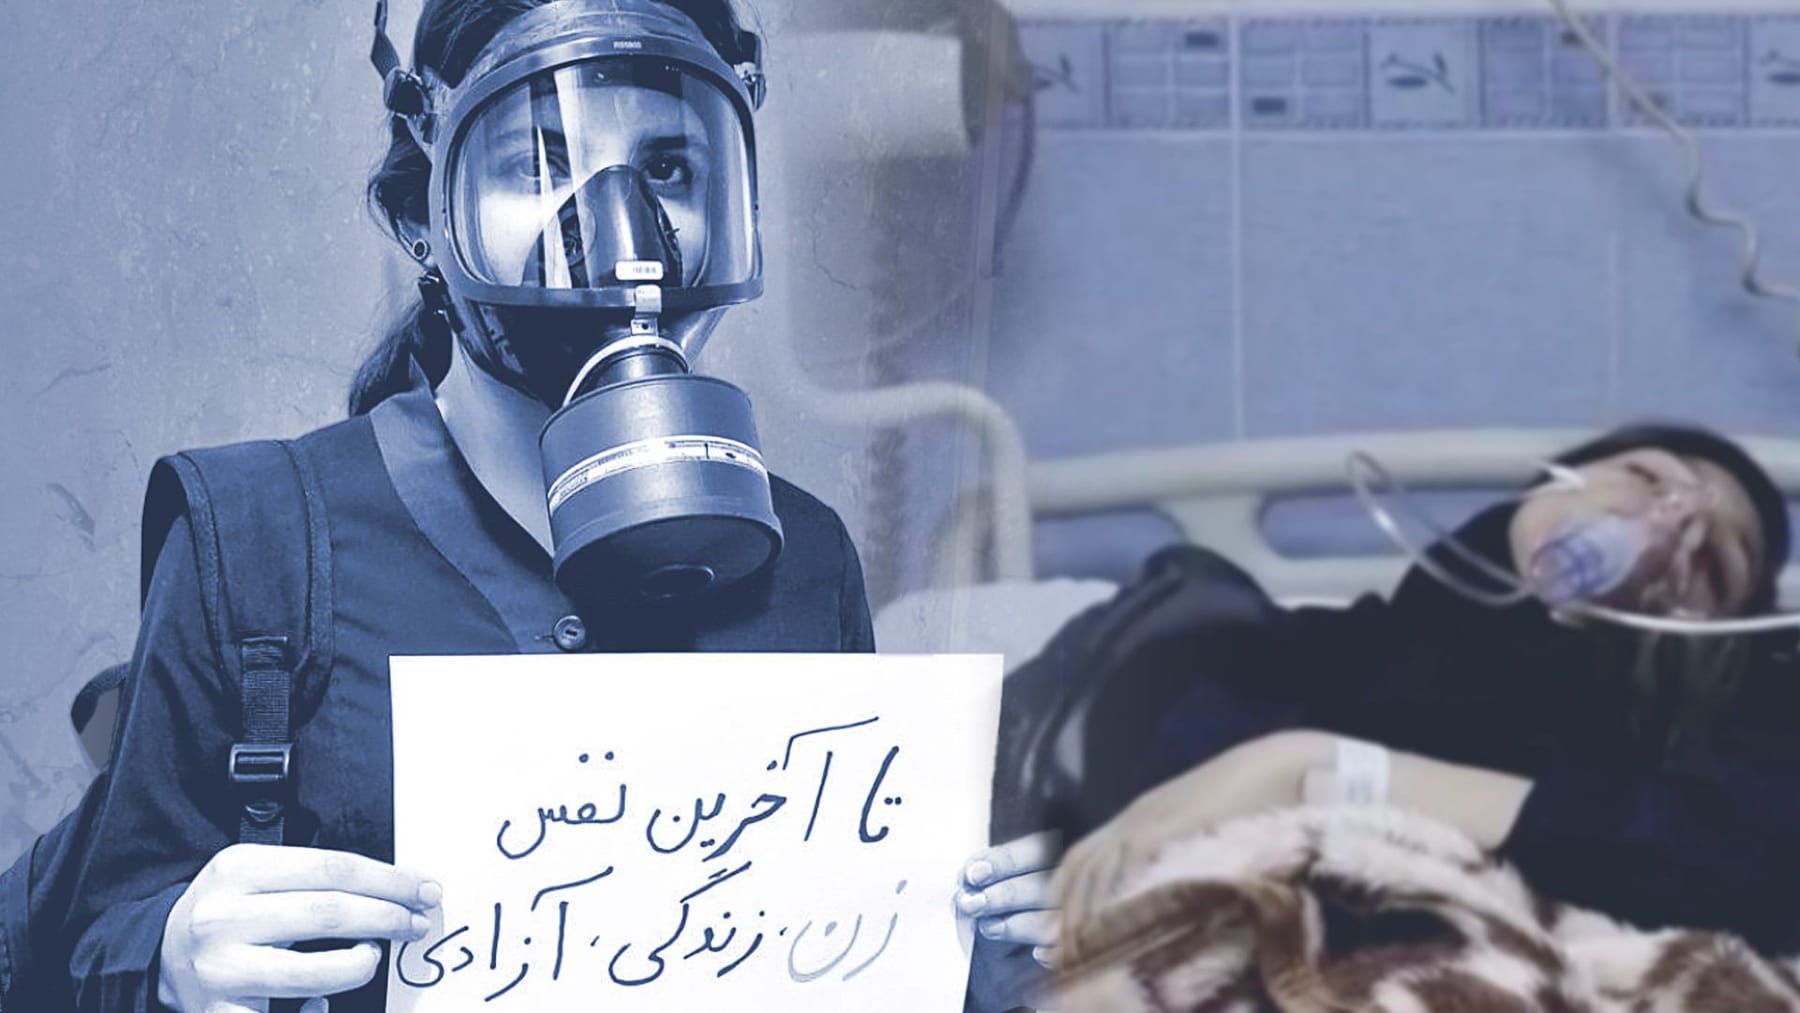 Gift als Waffe im Iran | Die Vergiftungsmethoden des Regimes